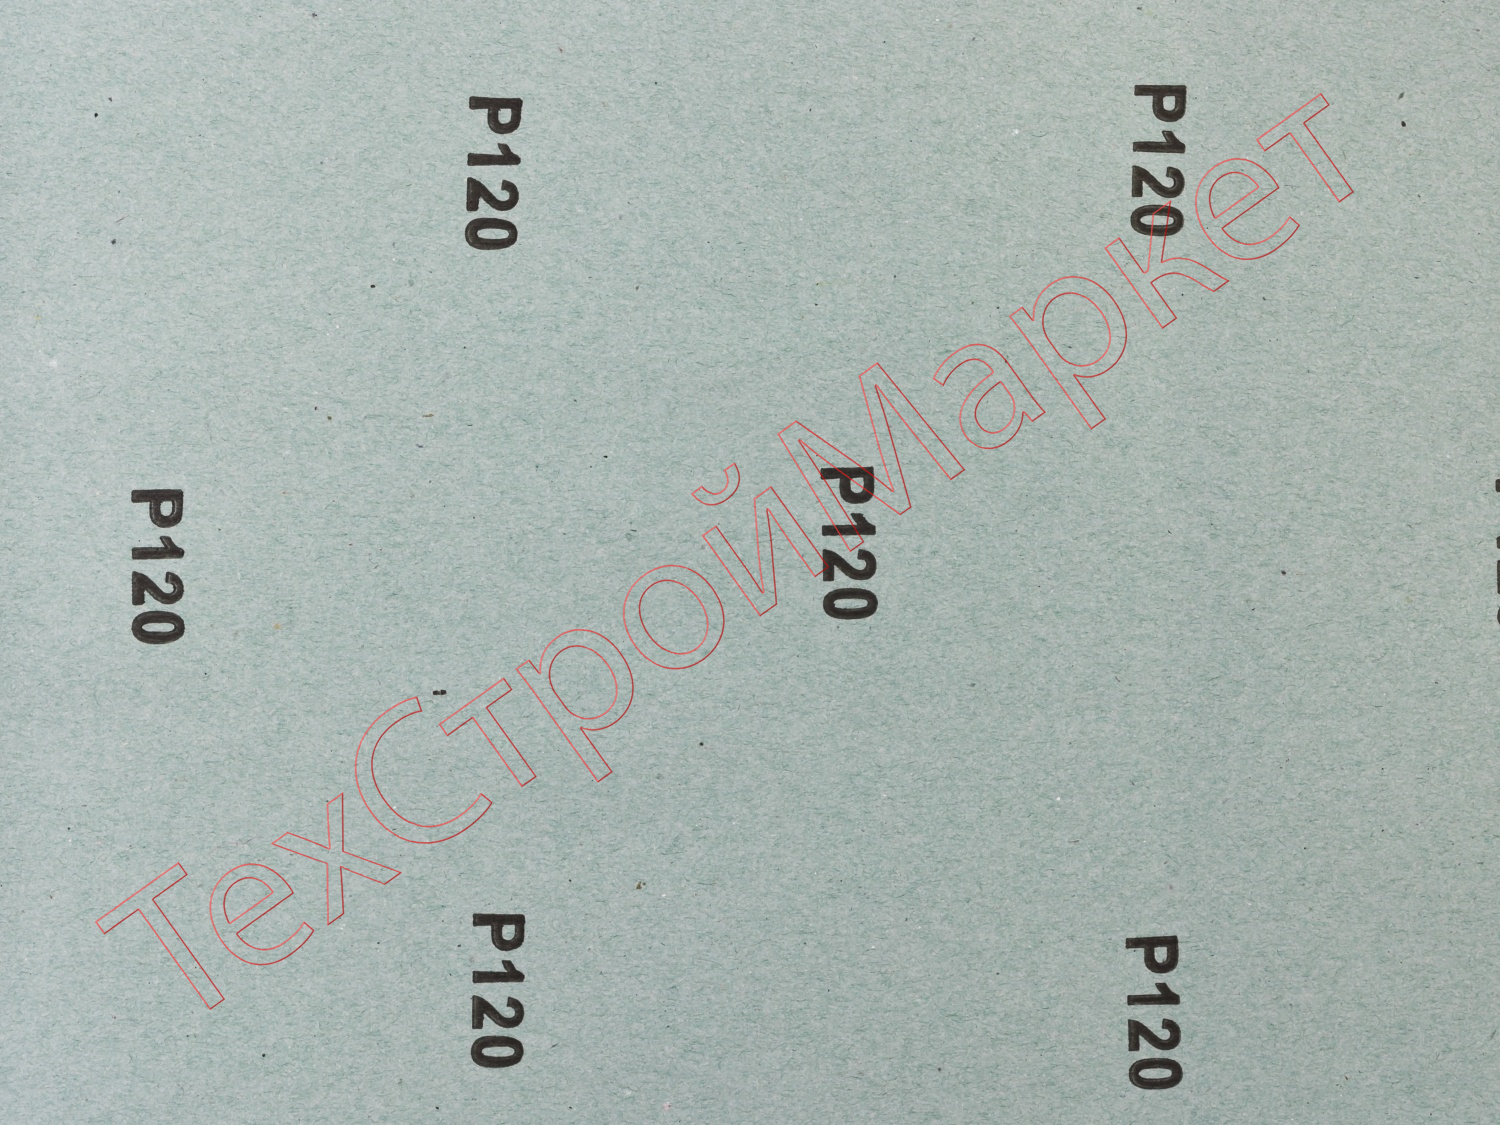 Лист шлифовальный ЗУБР "СТАНДАРТ" на бумажной основе, водостойкий 230х280мм, Р120, 5шт